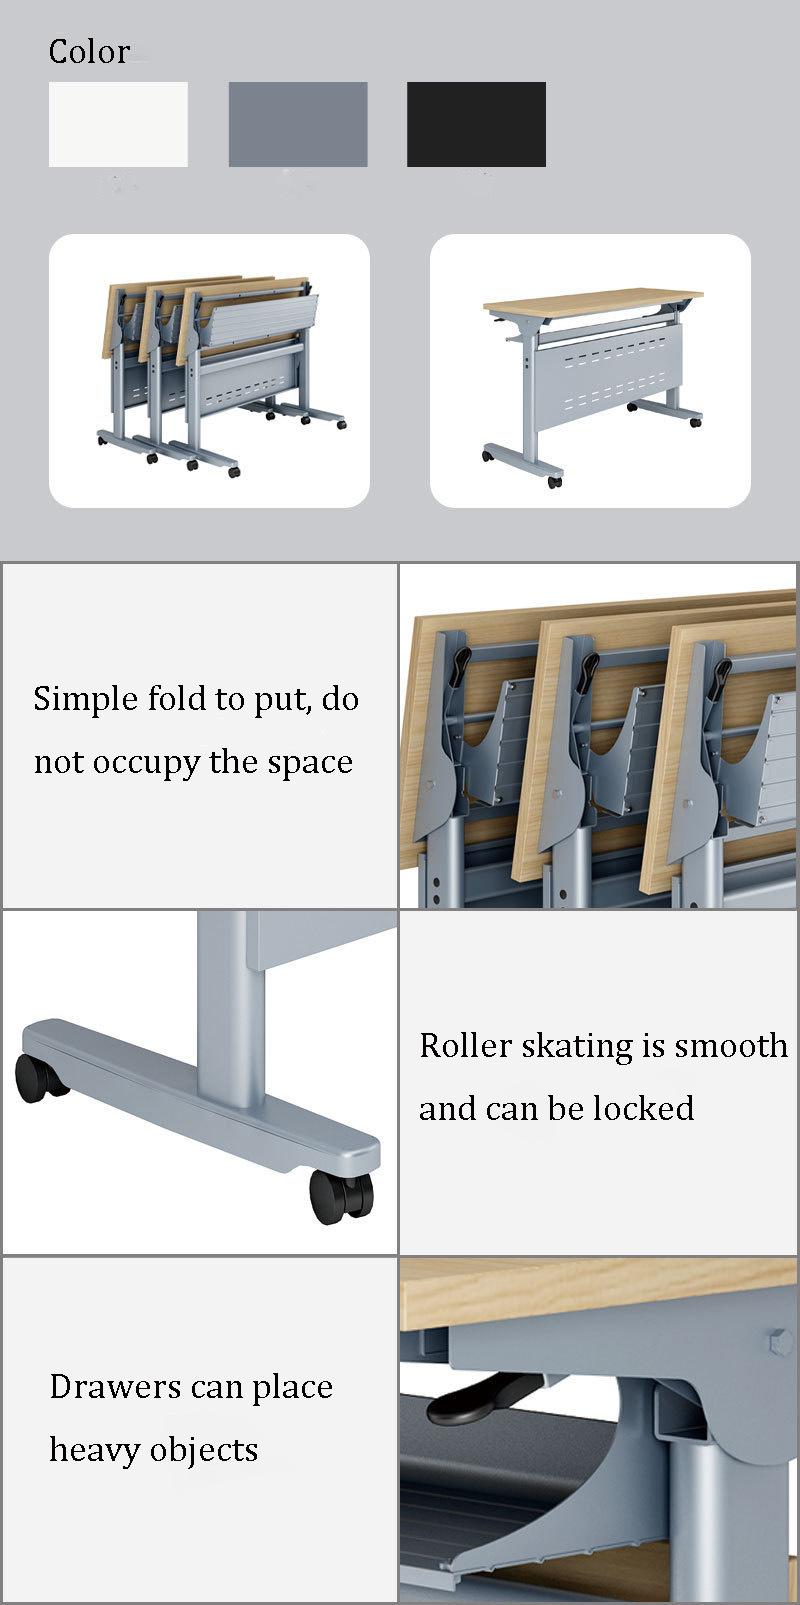 2022 New Design on Sale Office Furniture Training Folding Study Desk Adjustable Desk Office Desk